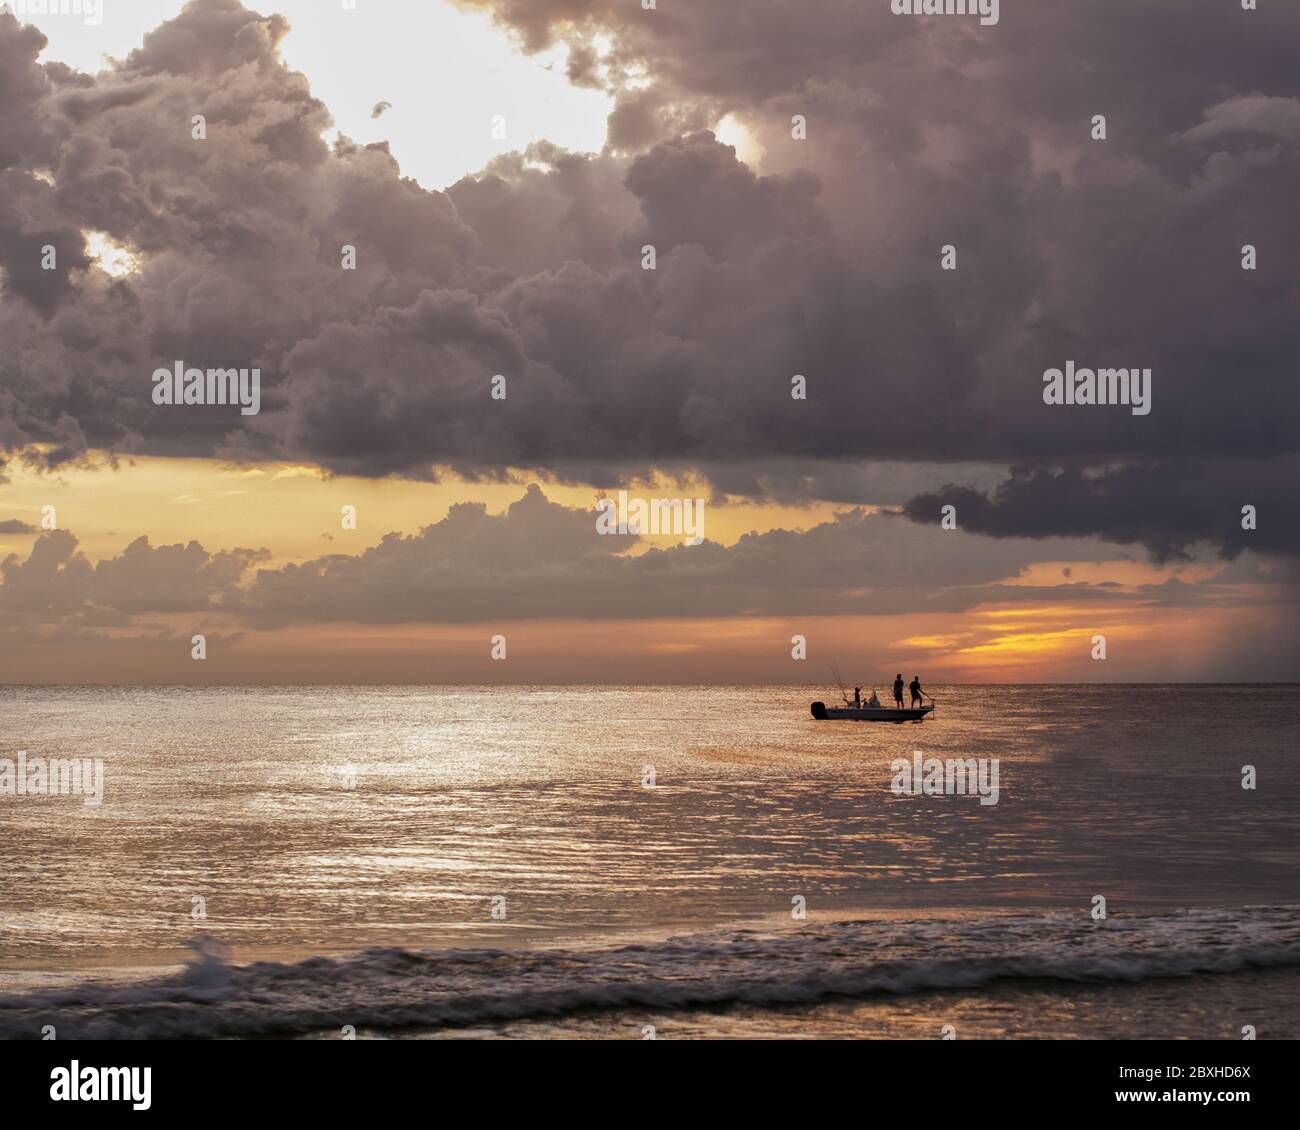 Coucher de soleil sur l'océan avec un bateau au loin avec deux personnes debout pour pêcher. Banque D'Images